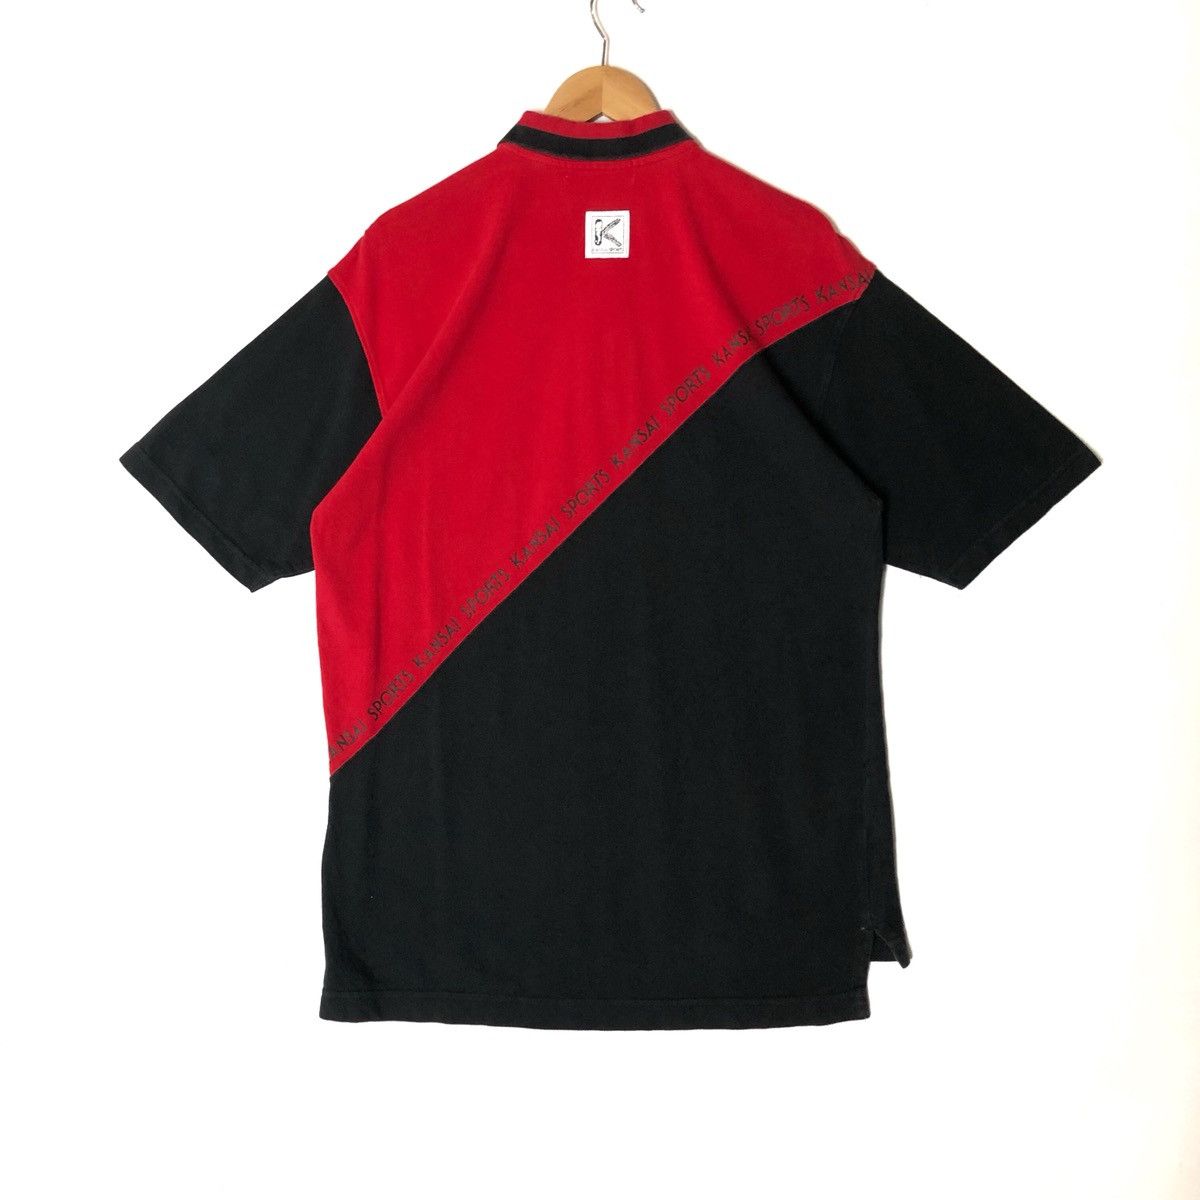 Japanese Brand Kansai Yamamoto Kansai Sports Polo Shirt Size US M / EU 48-50 / 2 - 3 Thumbnail